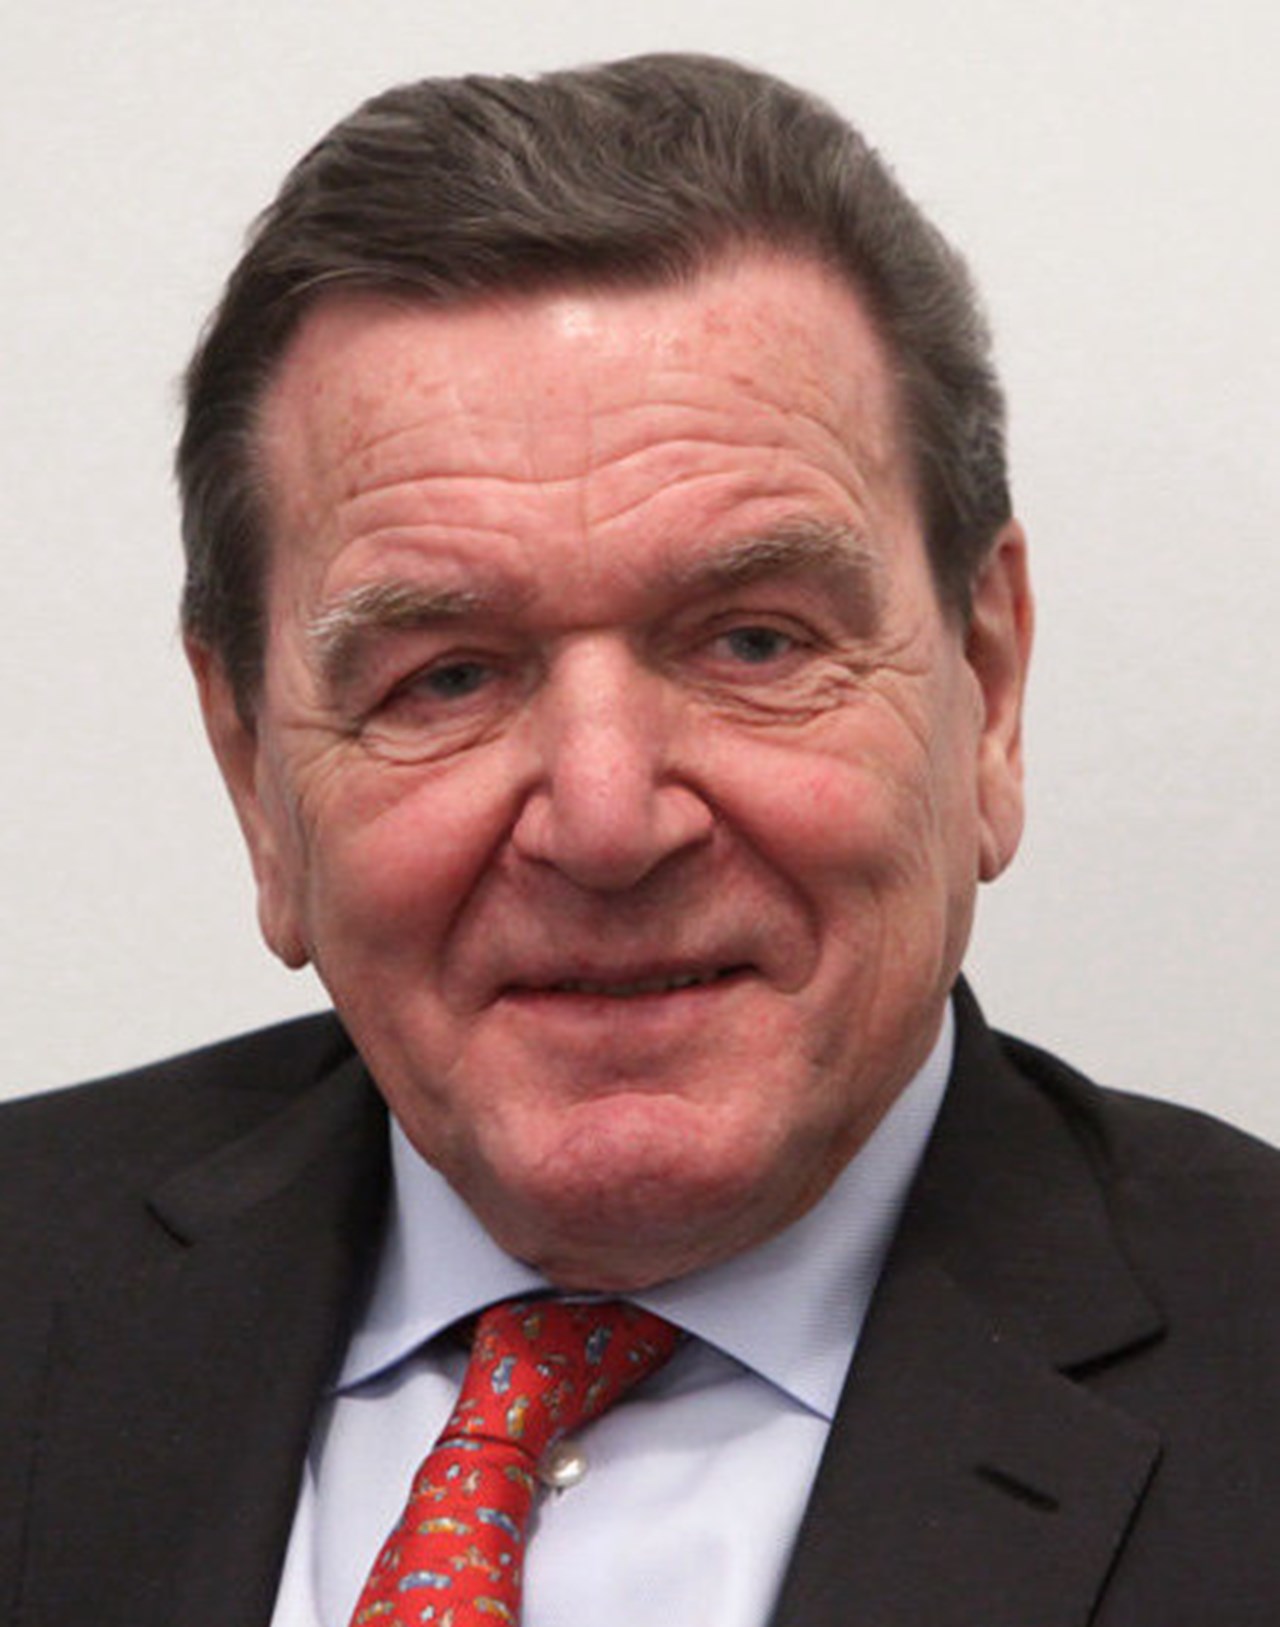 Ex-Bundesvorsitzender Schröder bleibt trotz Russland-Verbindungen Mitglied von Scholz‘ SPD